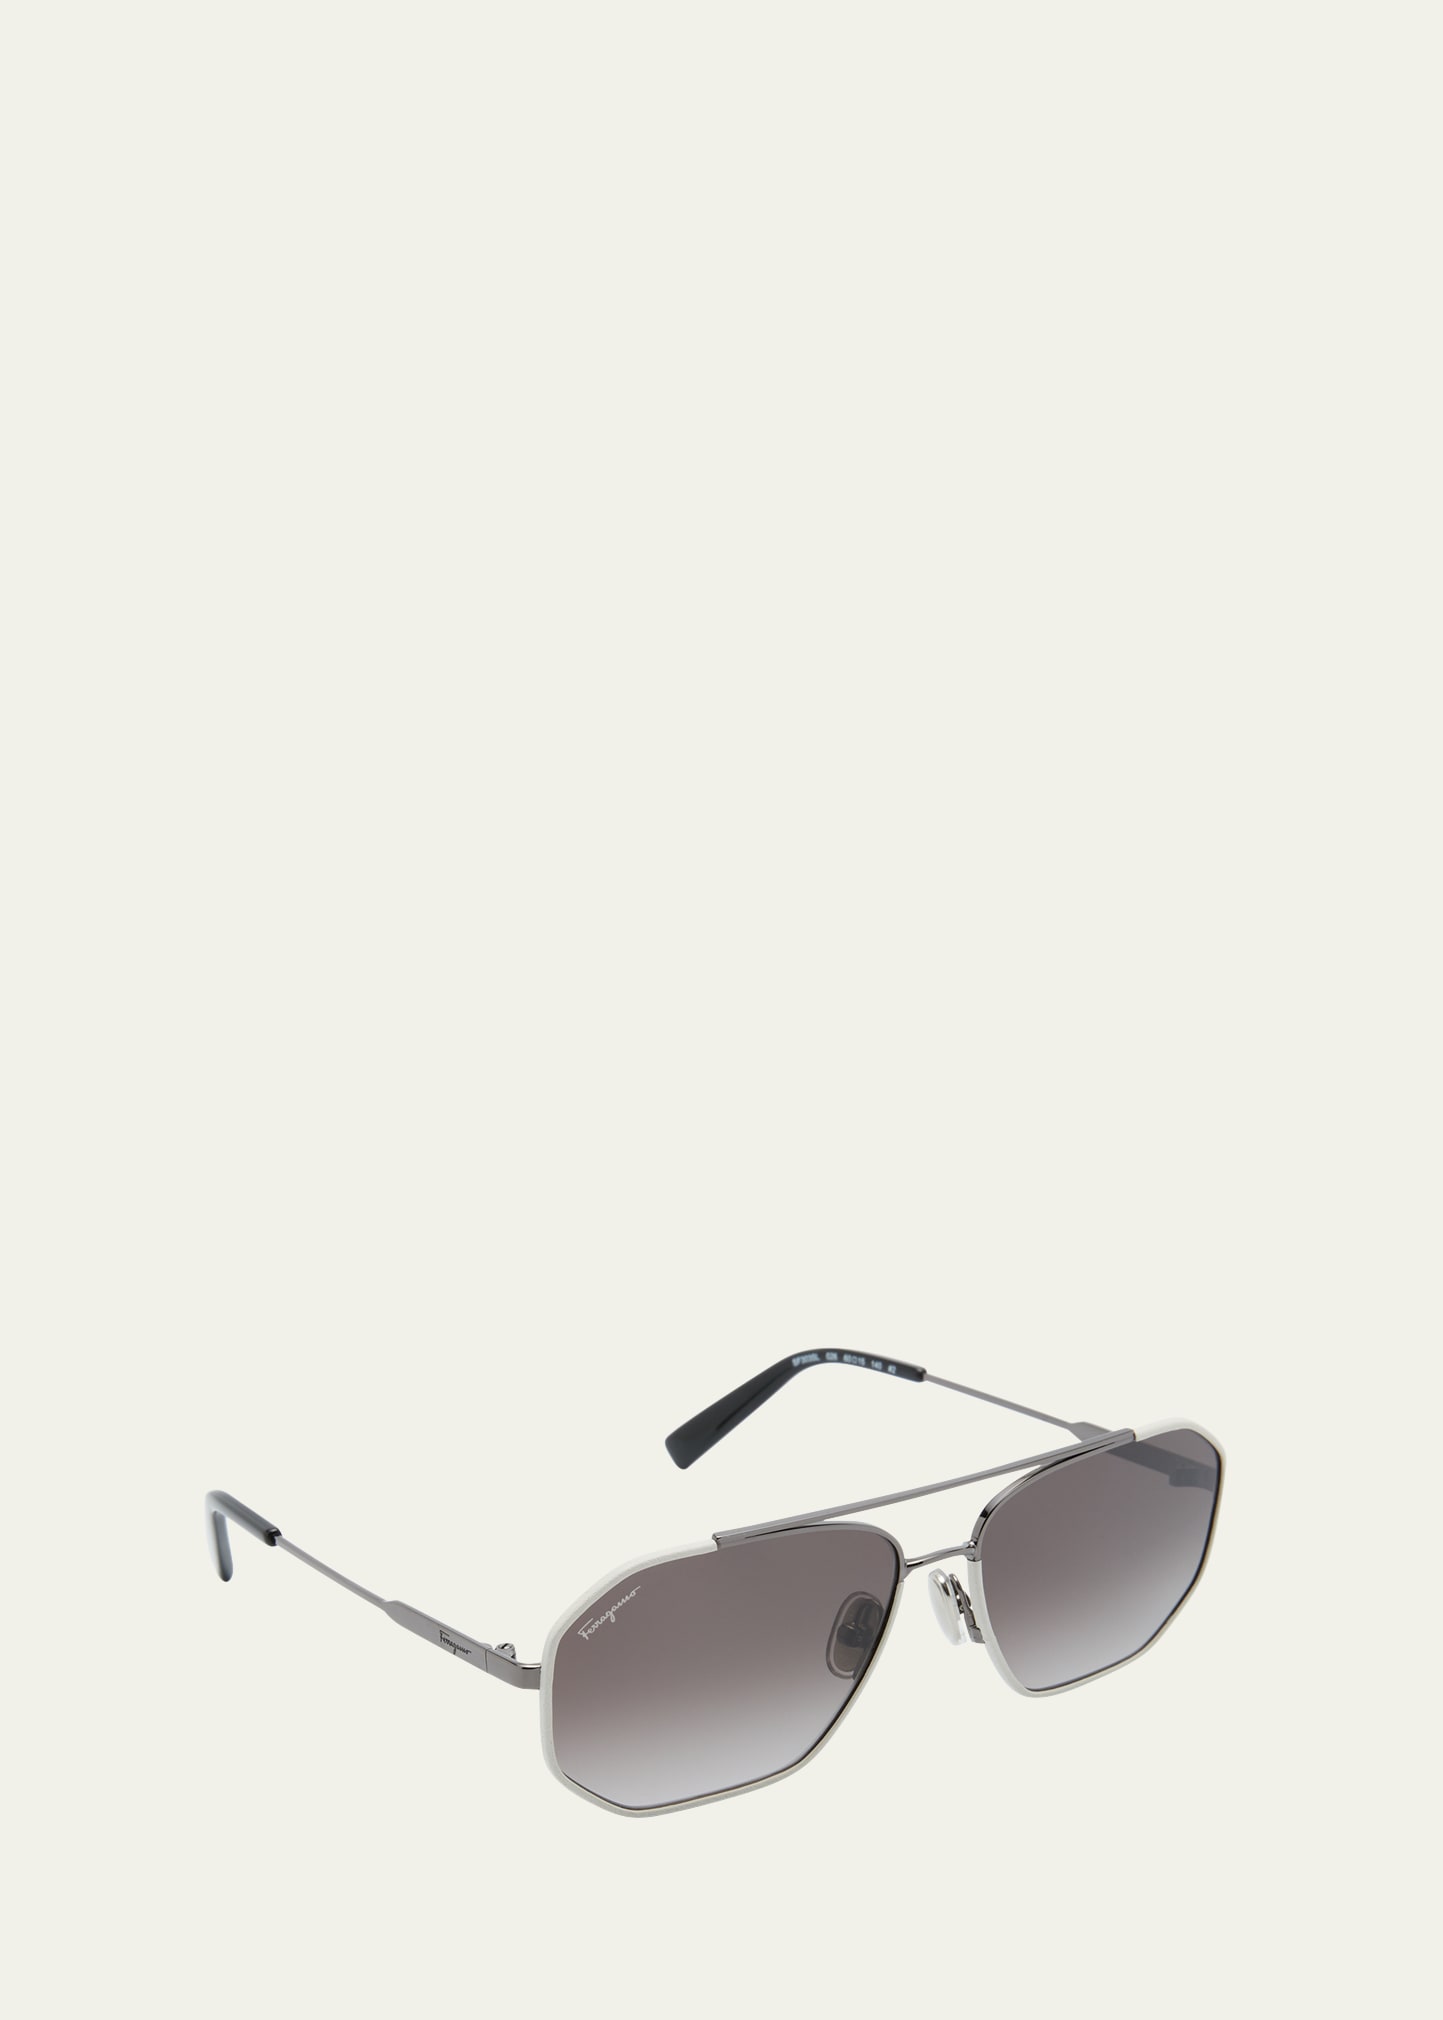 Ferragamo Men's Metal And Leather Navigator Sunglasses In Dark Ruthenium Wh